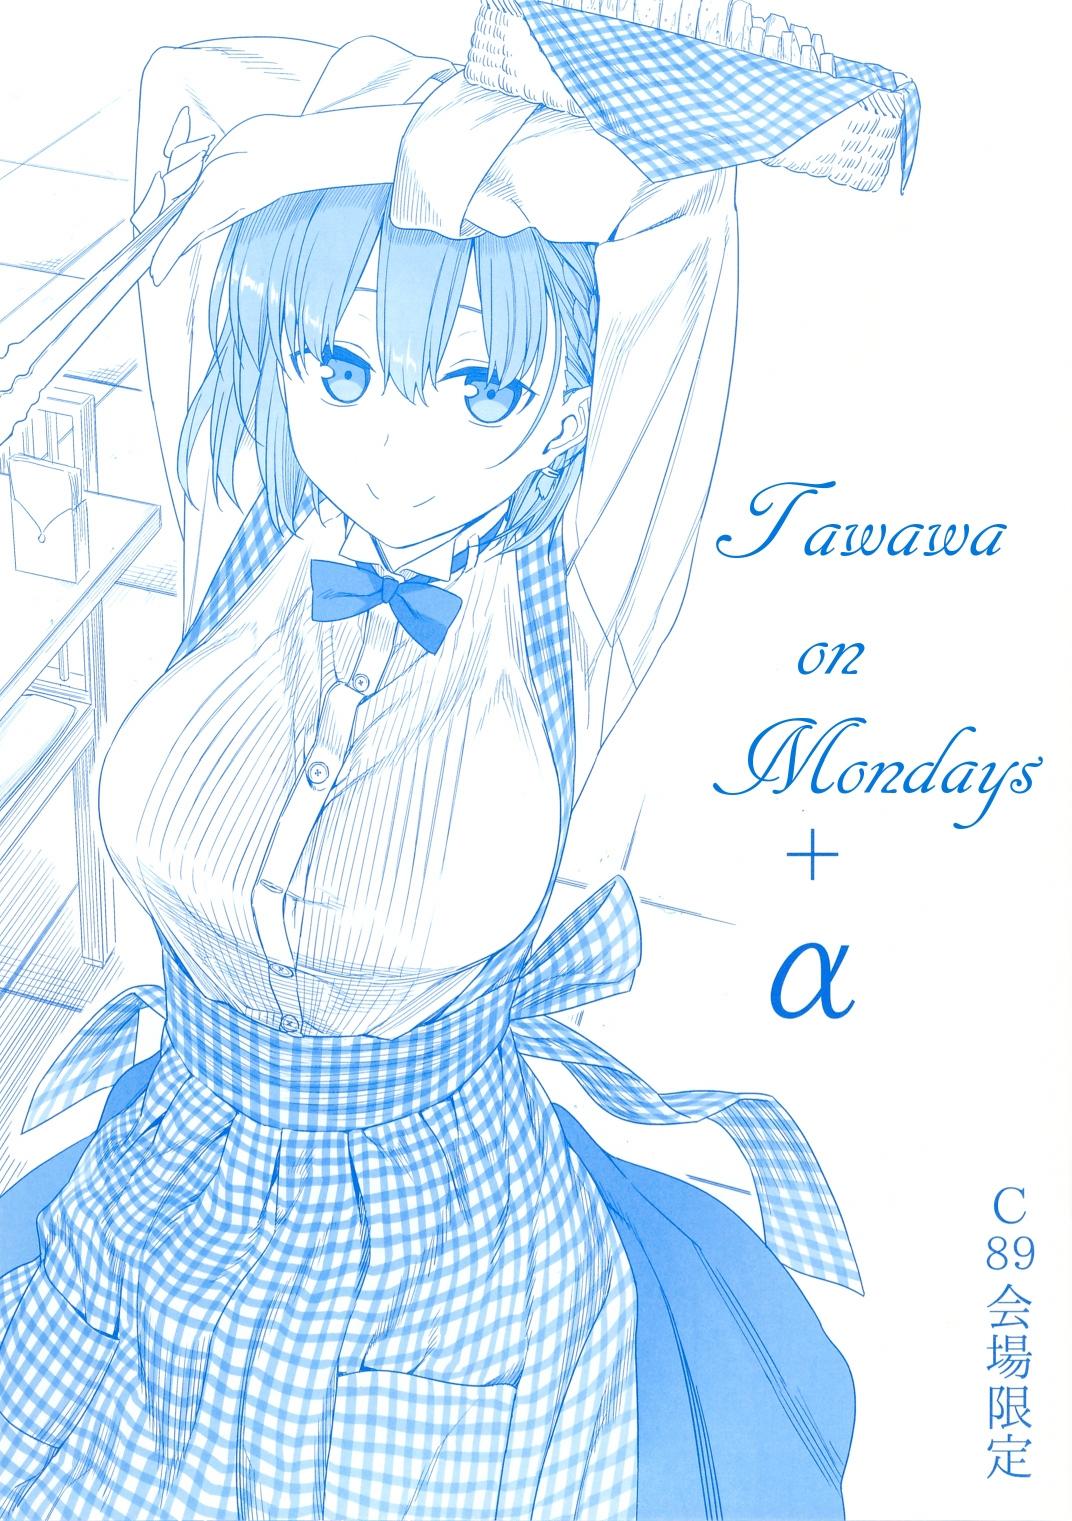 Read Getsuyoubi No Tawawa Manga on Mangakakalot